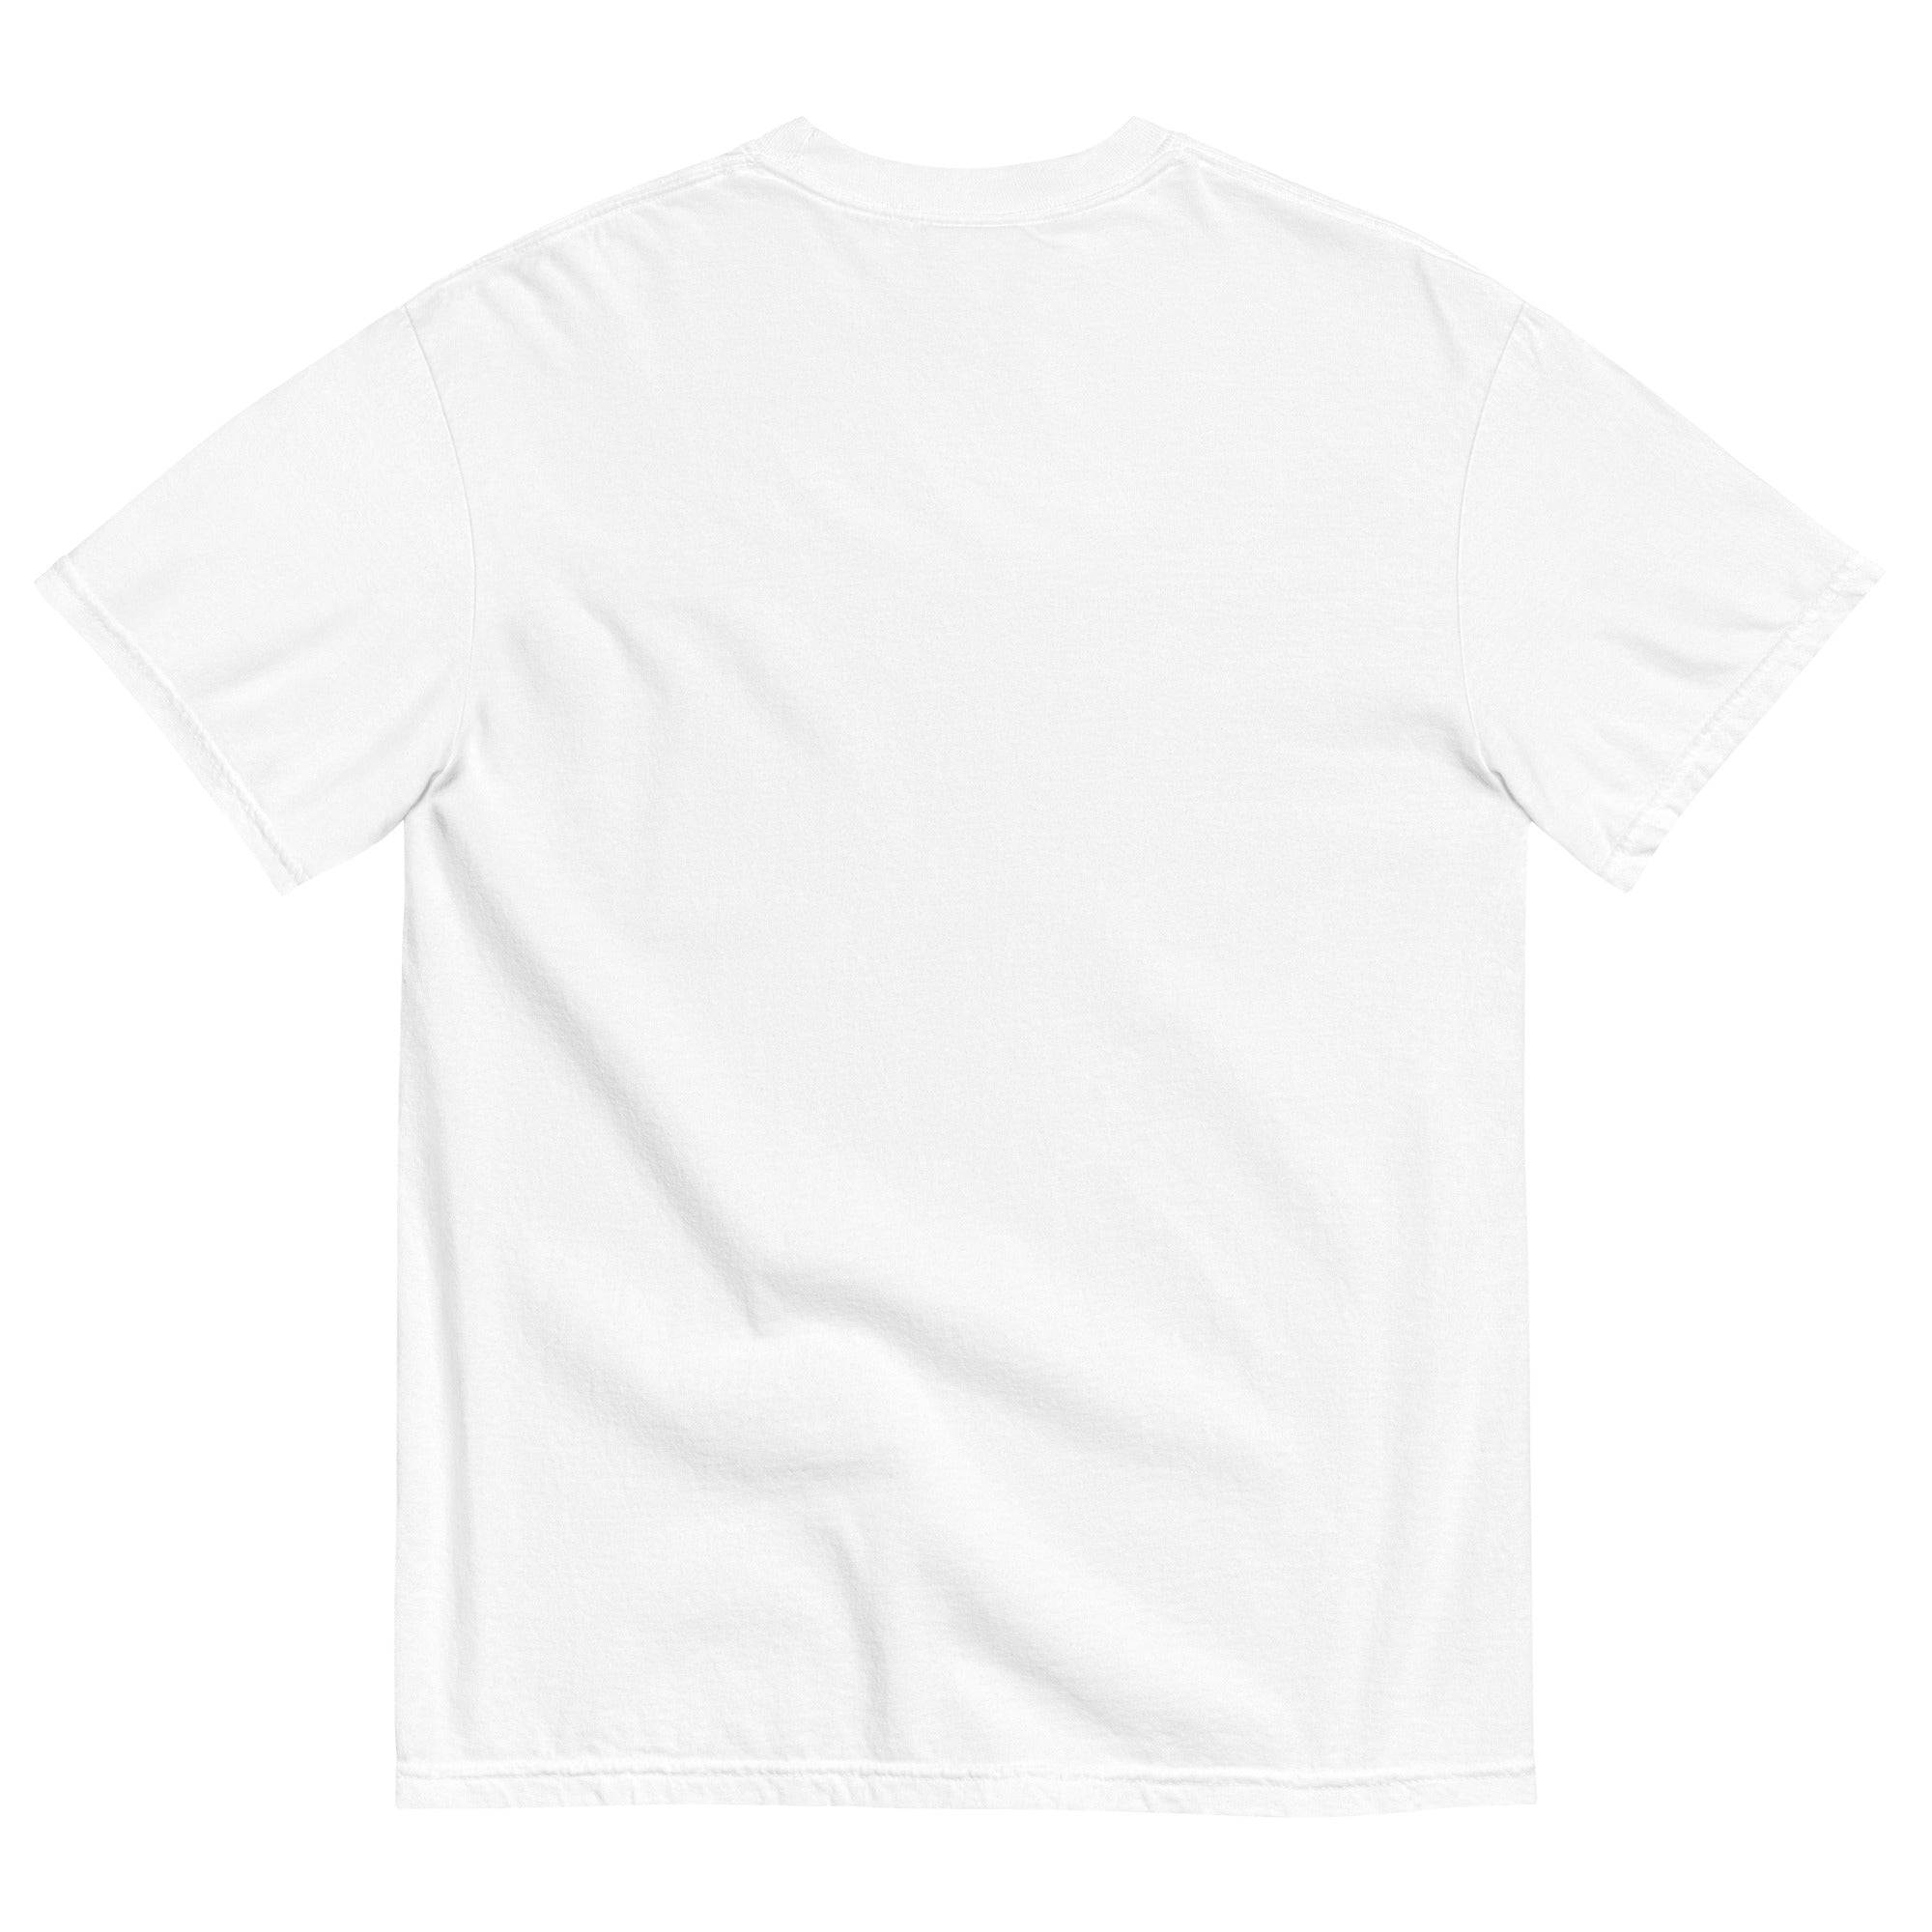 Kentucky Unisex Heavyweight T-shirt